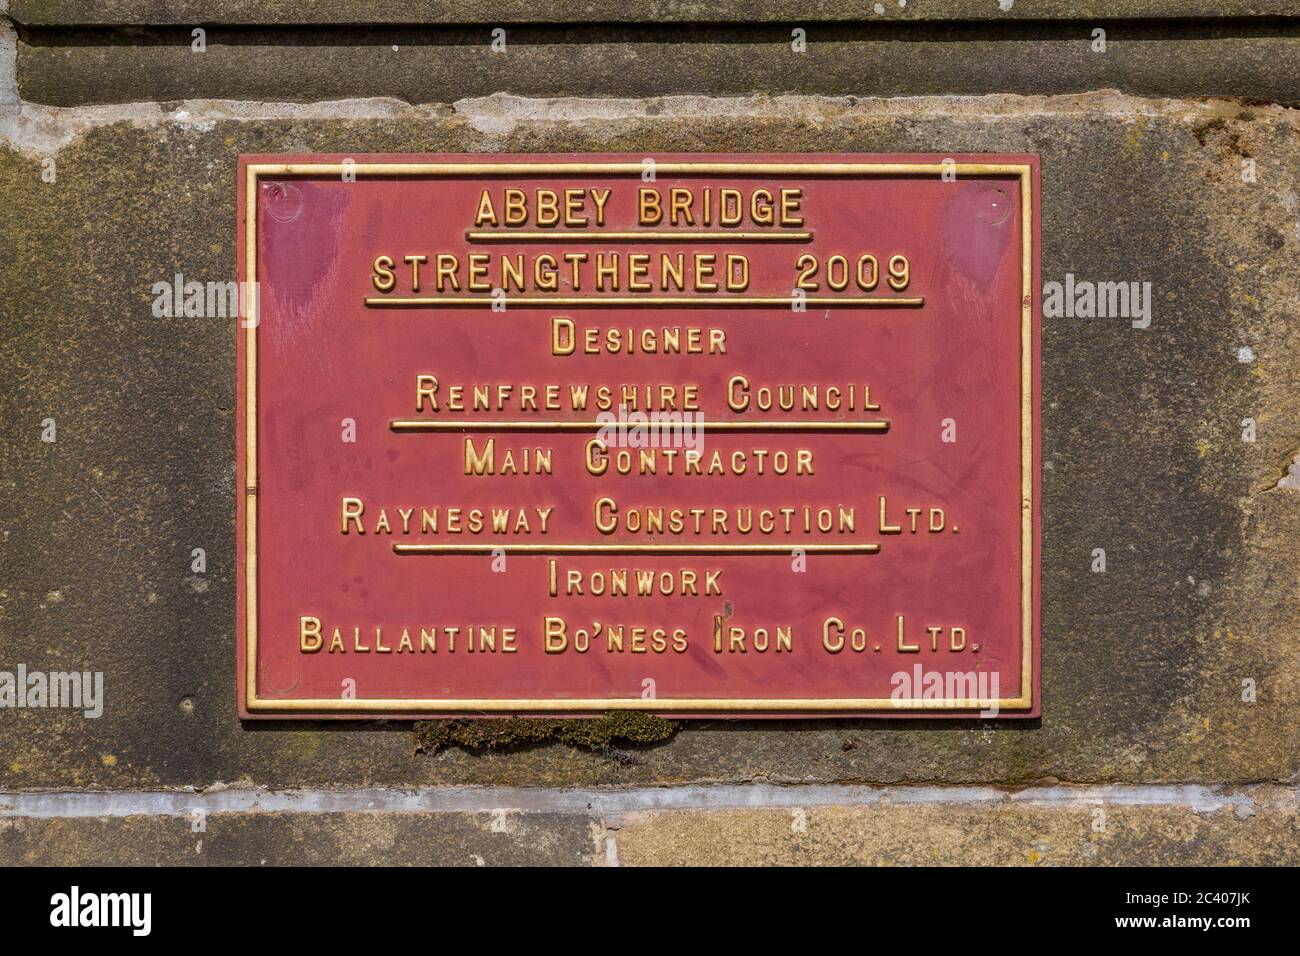 Abbey Bridge, Paisley. Ein Schild, das Details zur Stärkung von 2009, Renfrewshire, Schottland, Großbritannien, auflistet Stockfoto